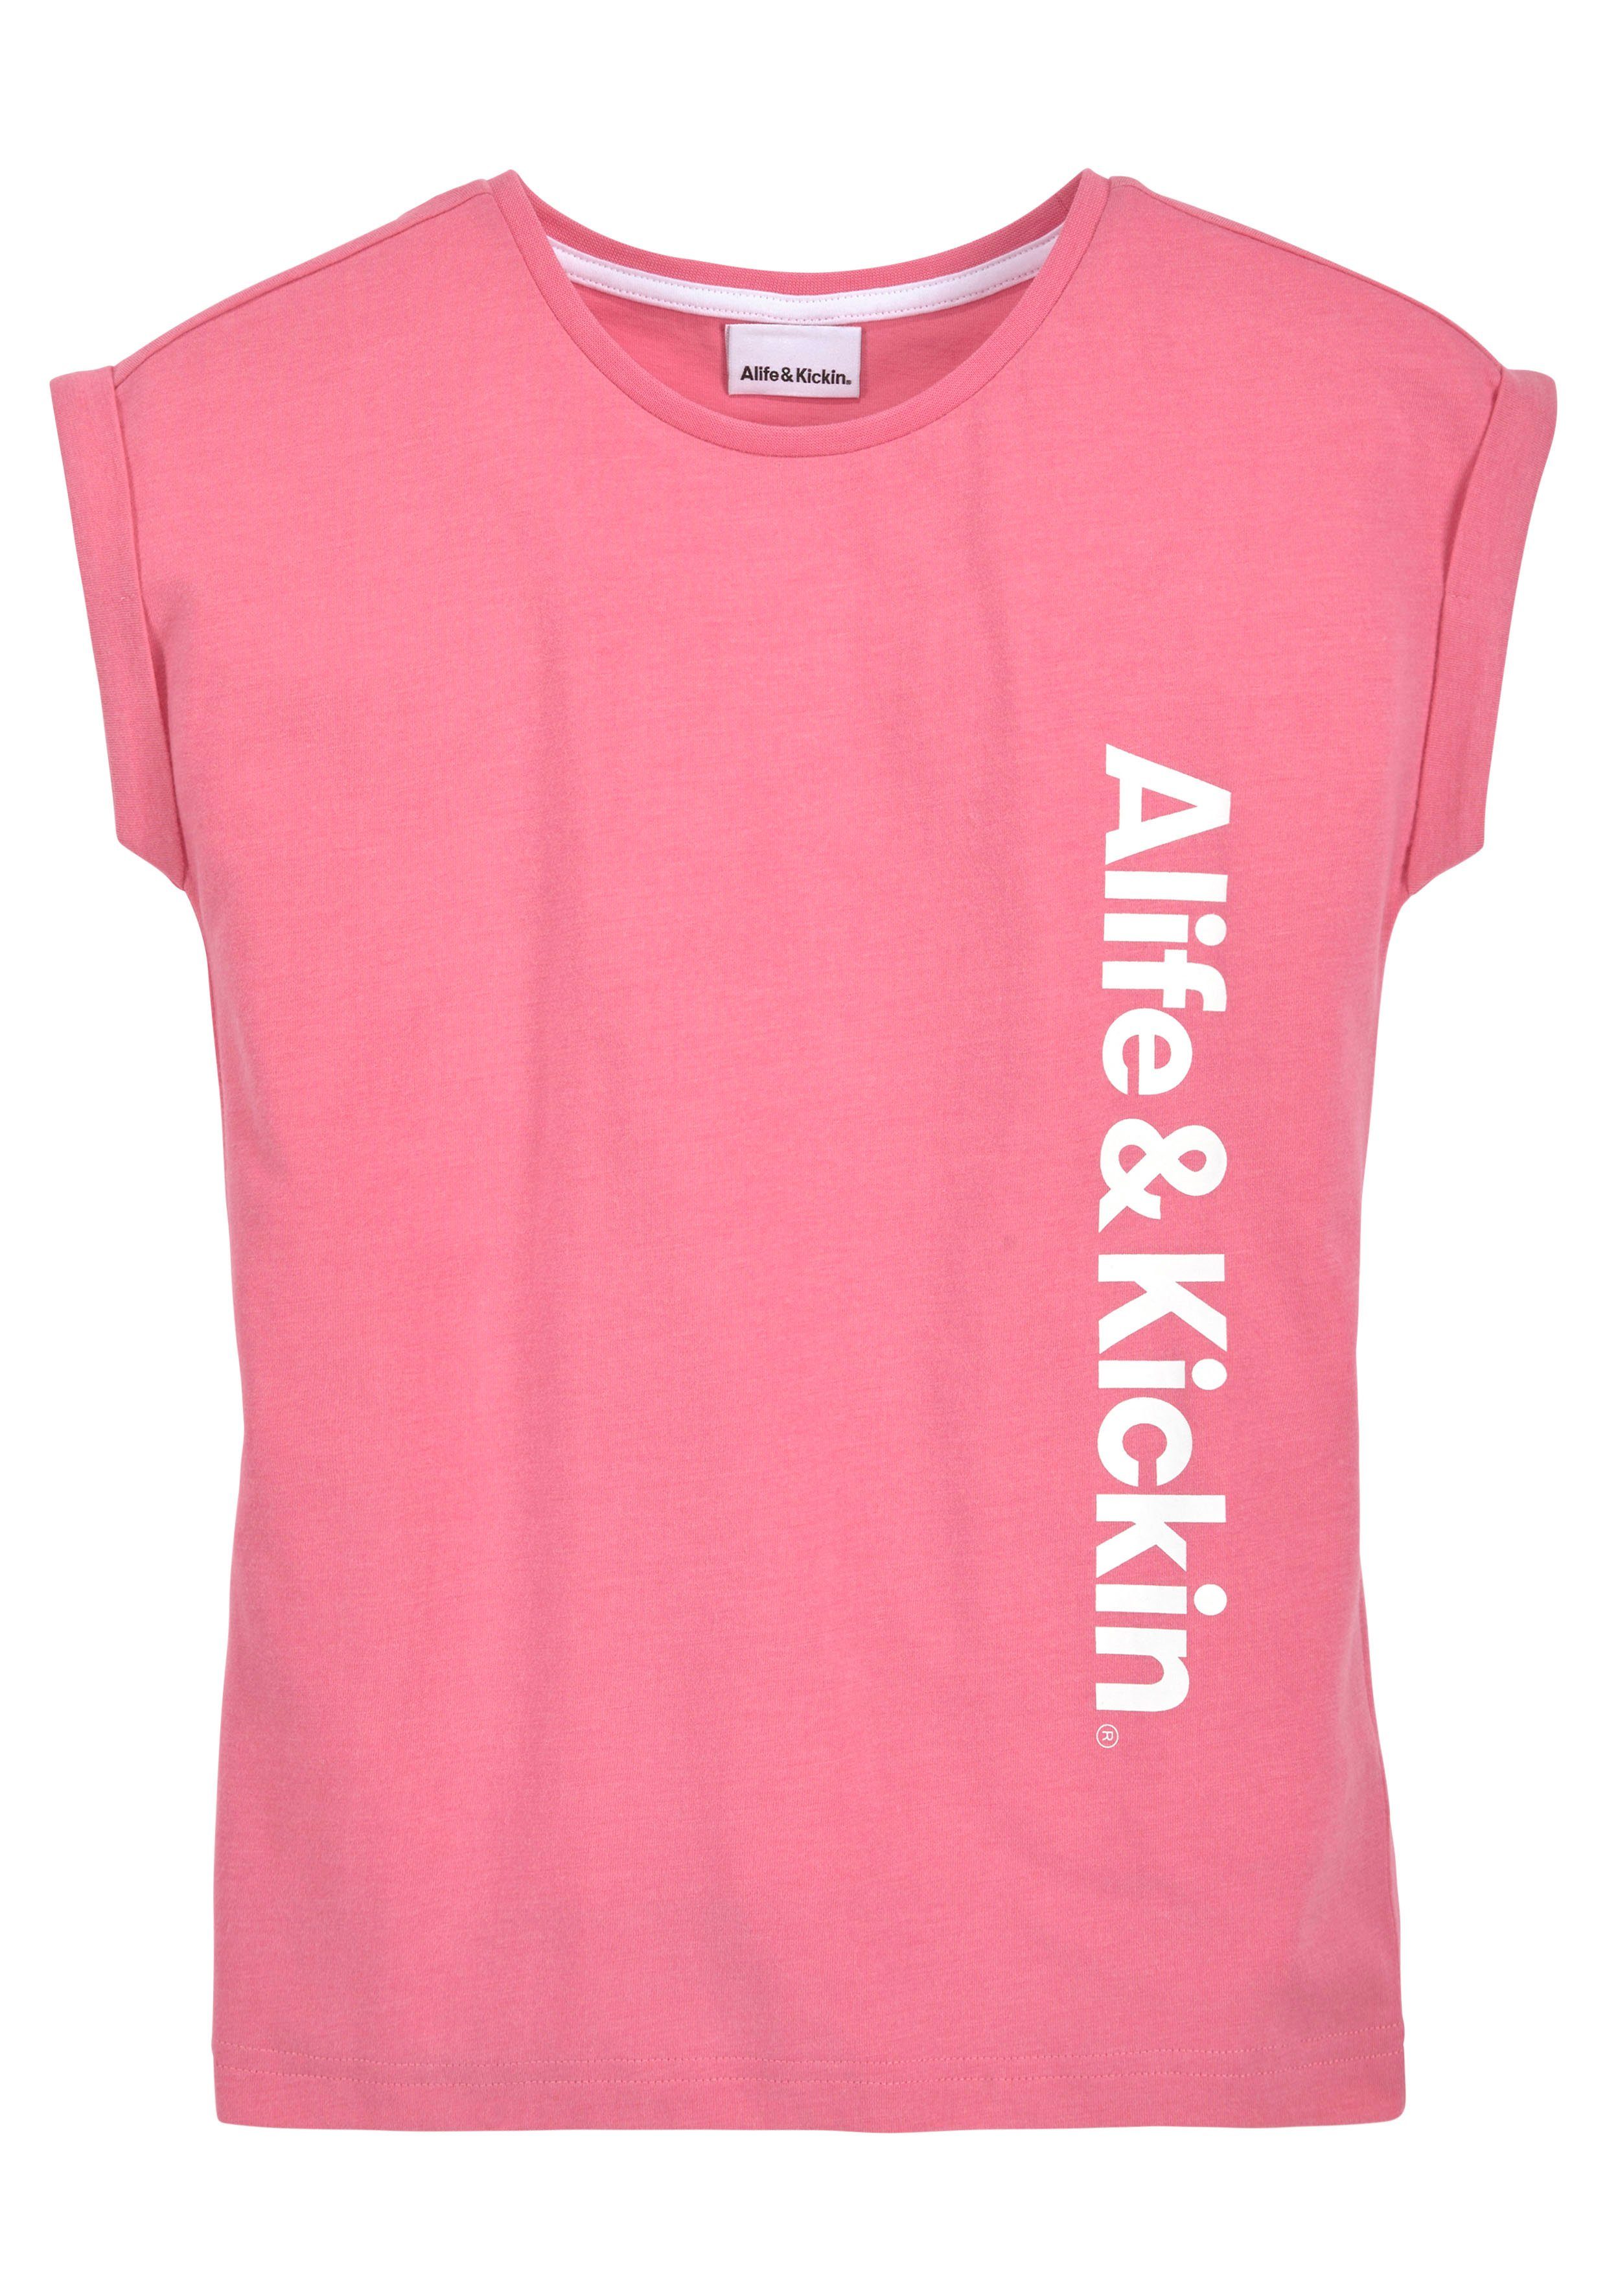 & für Alife Druck T-Shirt Kickin Kids. NEUE Logo Kickin Alife & mit MARKE!